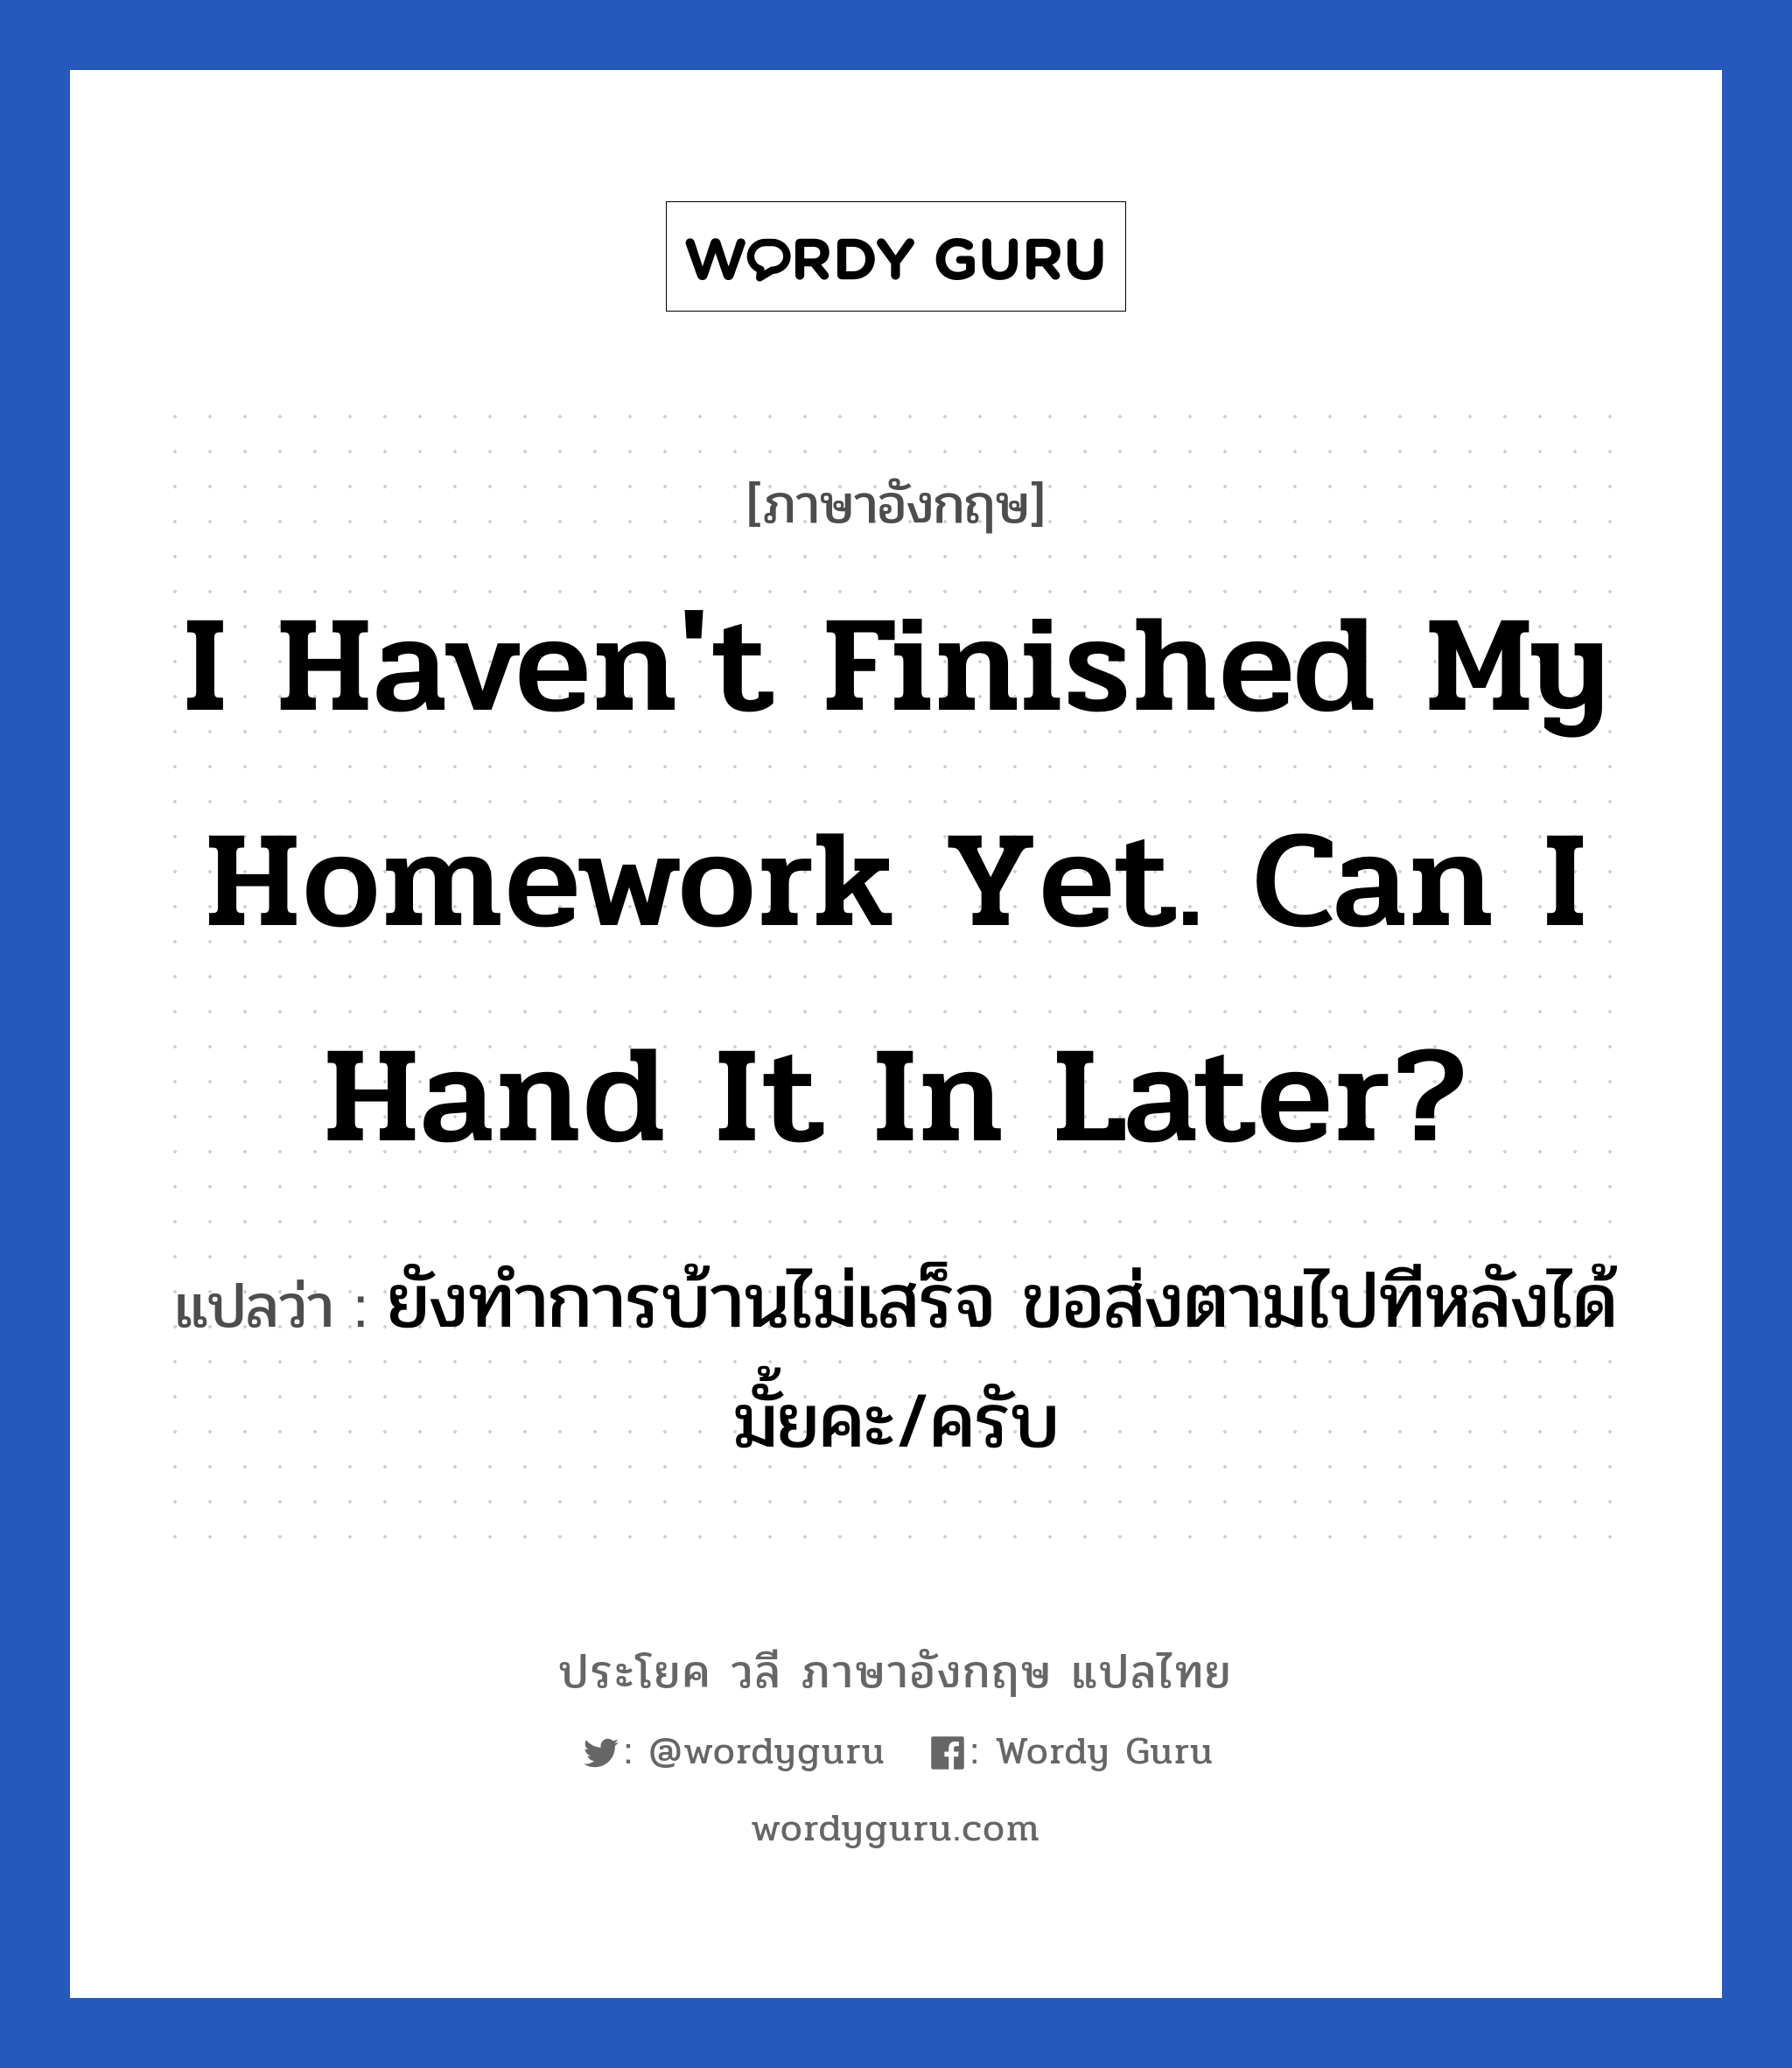 ยังทำการบ้านไม่เสร็จ ขอส่งตามไปทีหลังได้มั้ยคะ/ครับ ภาษาอังกฤษ?, วลีภาษาอังกฤษ ยังทำการบ้านไม่เสร็จ ขอส่งตามไปทีหลังได้มั้ยคะ/ครับ แปลว่า I haven't finished my homework yet. Can I hand it in later?